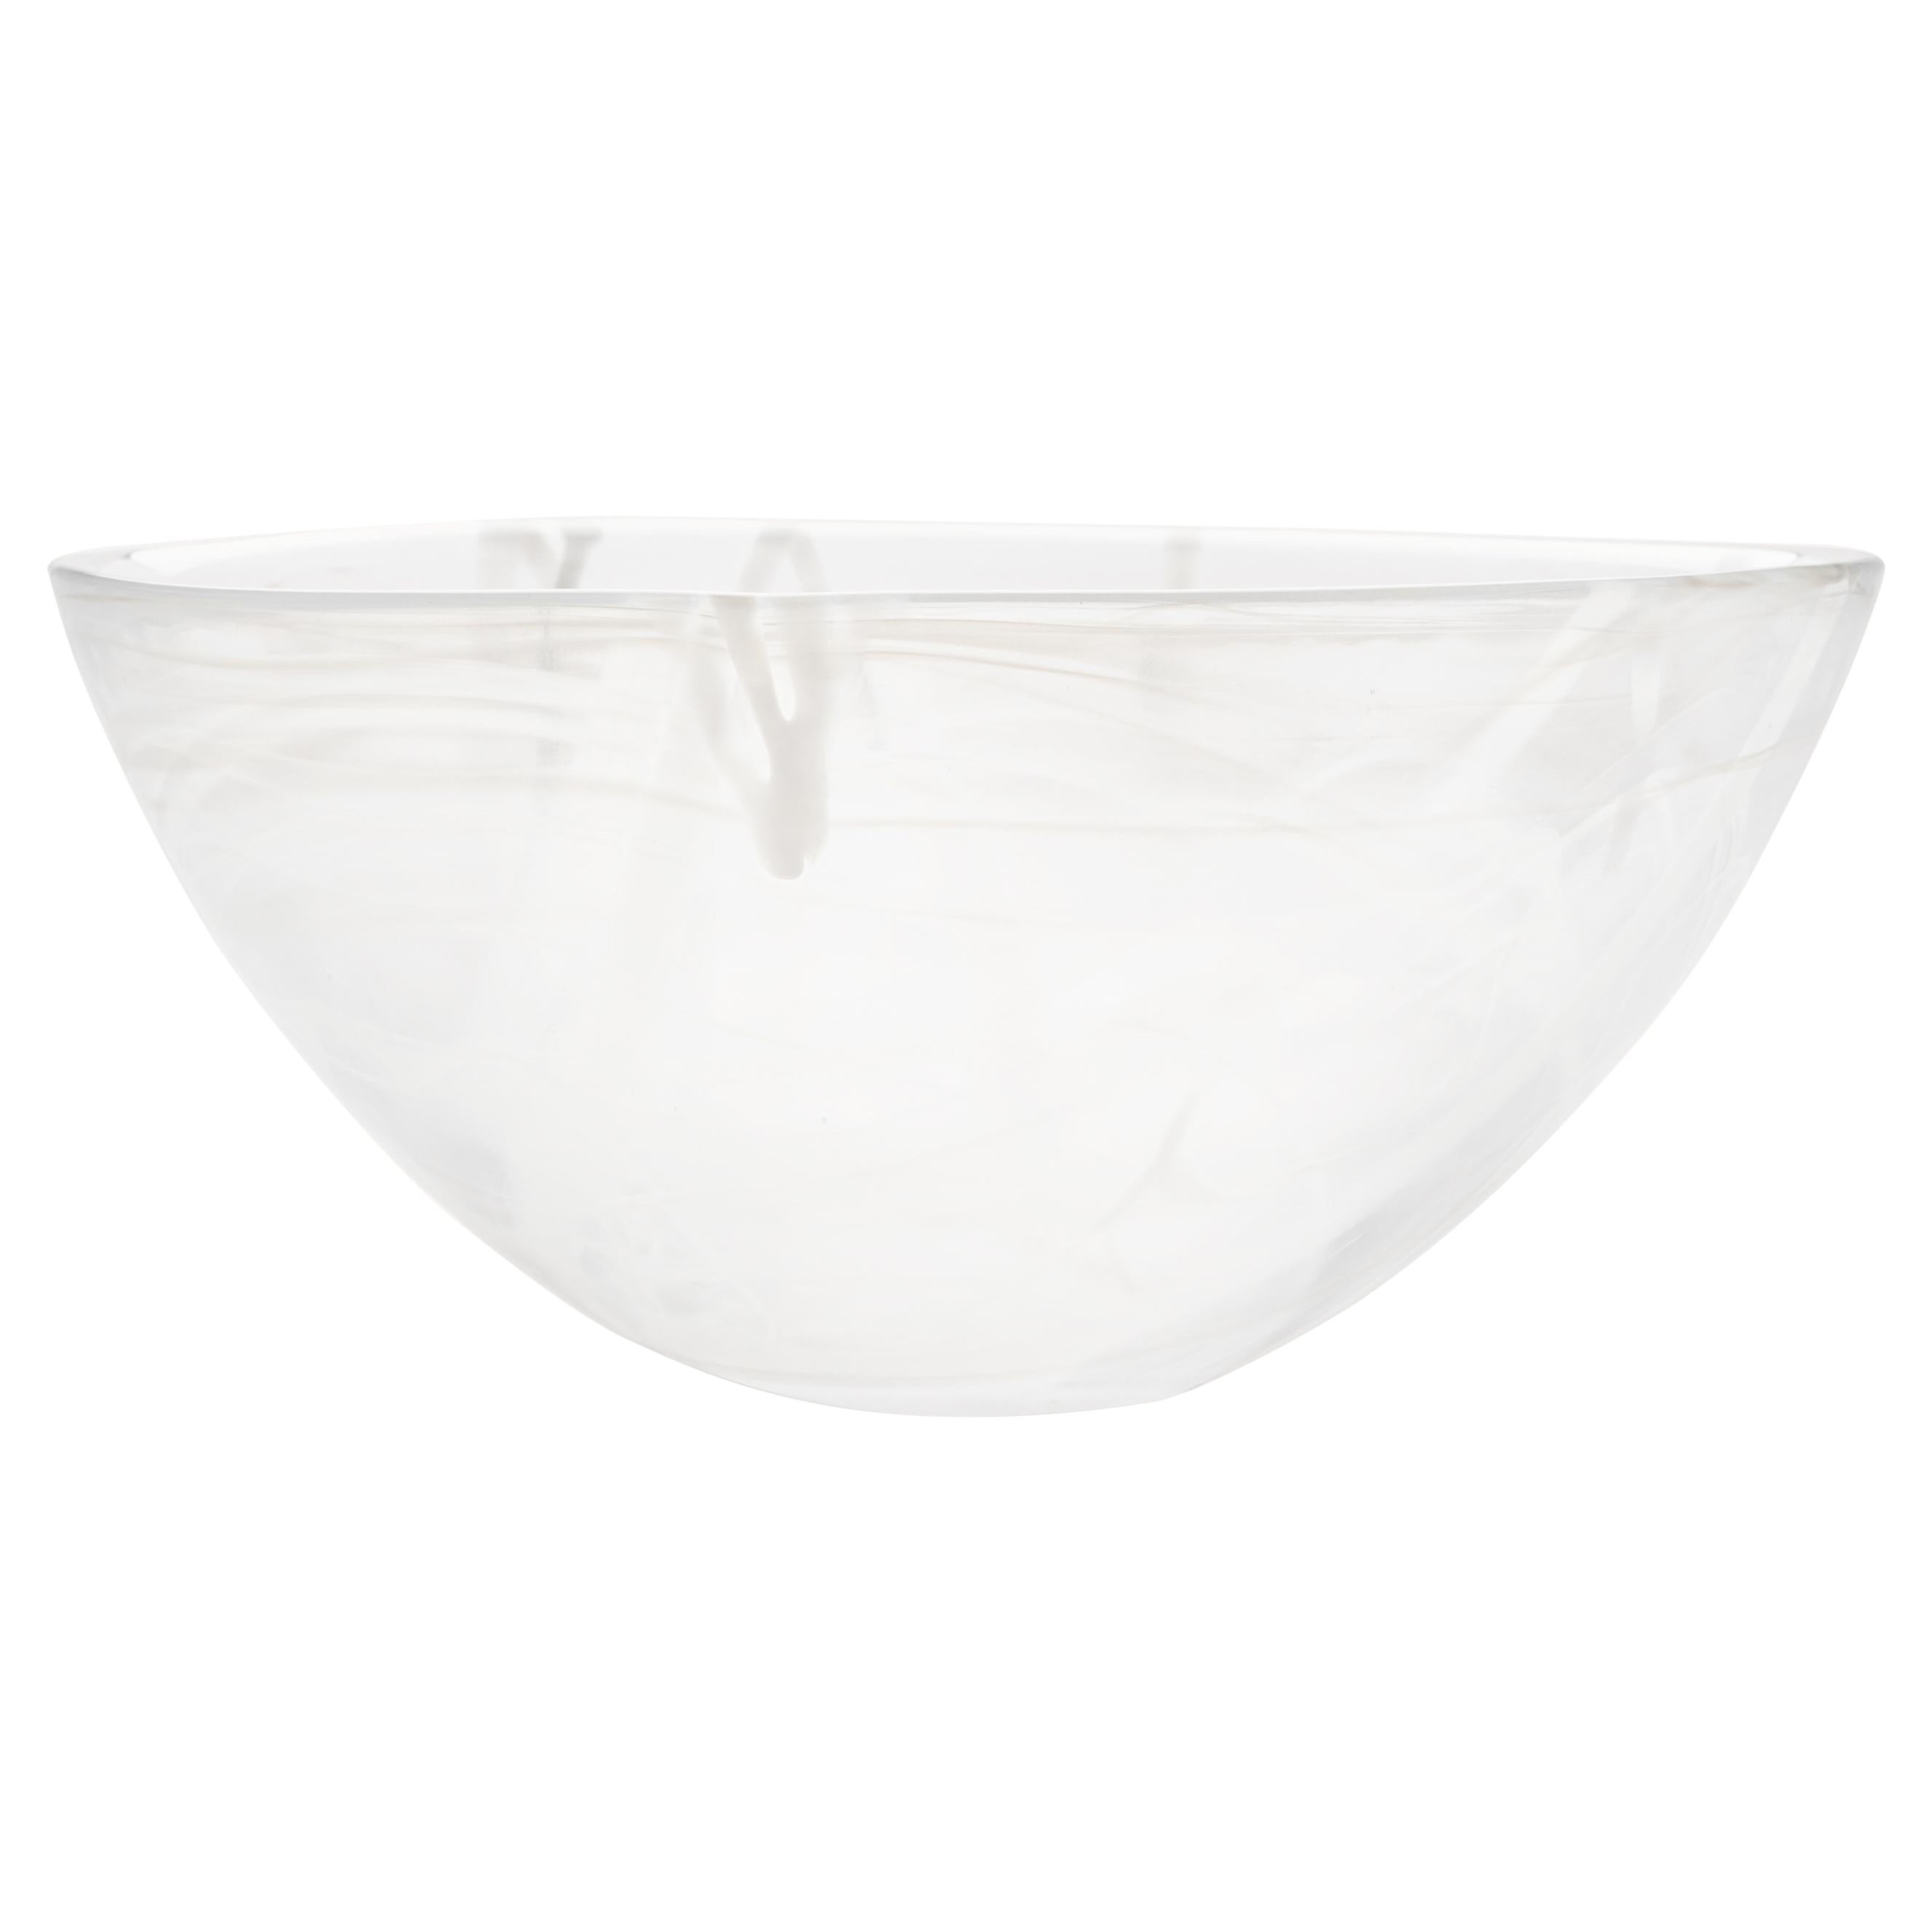 Kosta Boda Contrast Bowl White/White Large